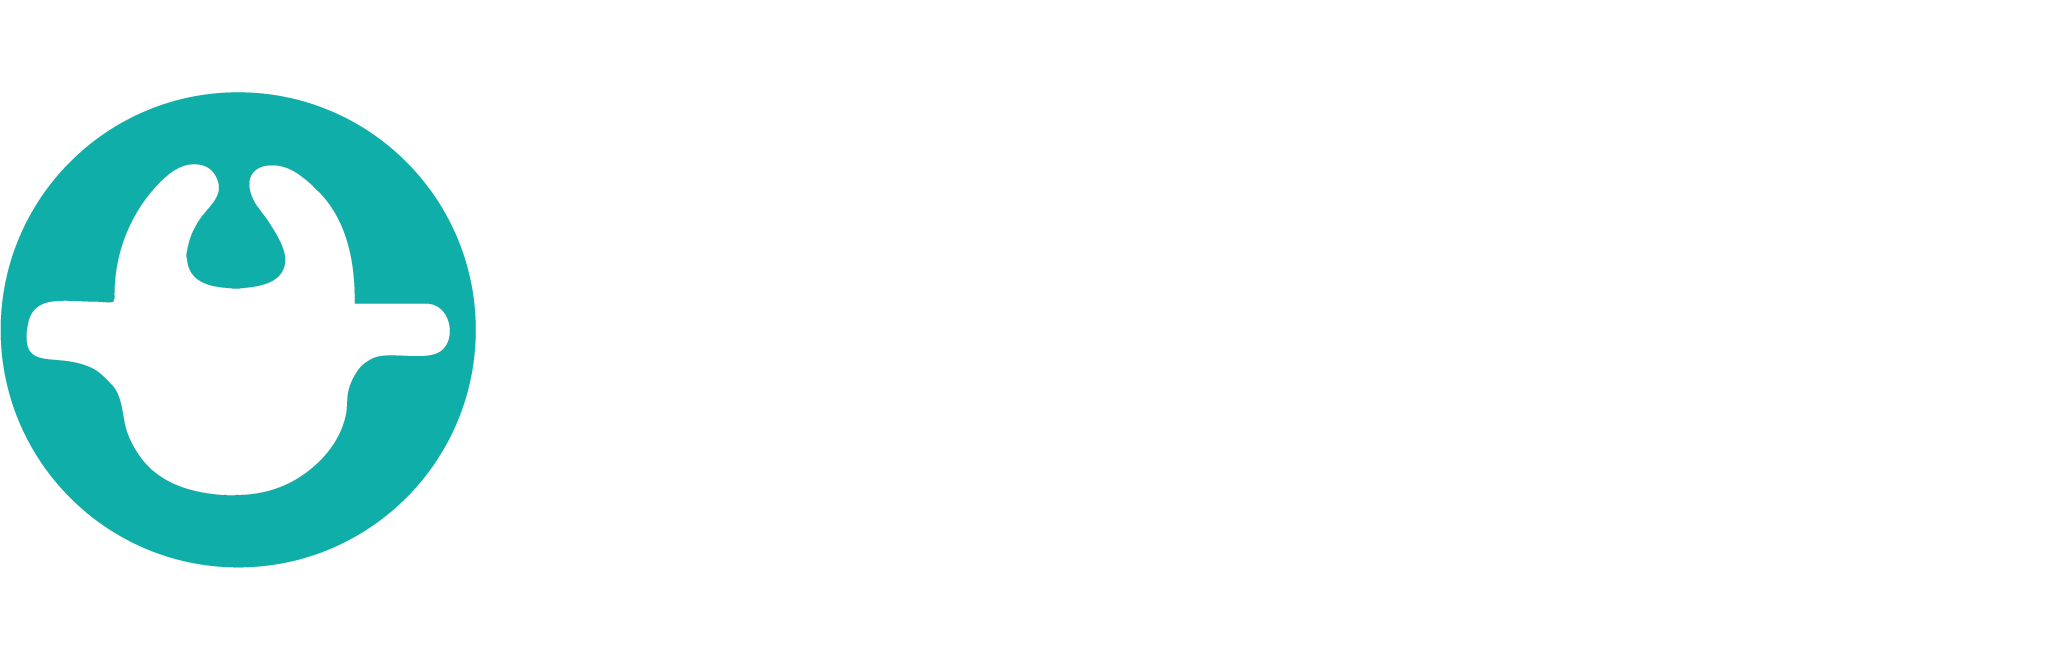 Türkiye Spina Bifida Derneği